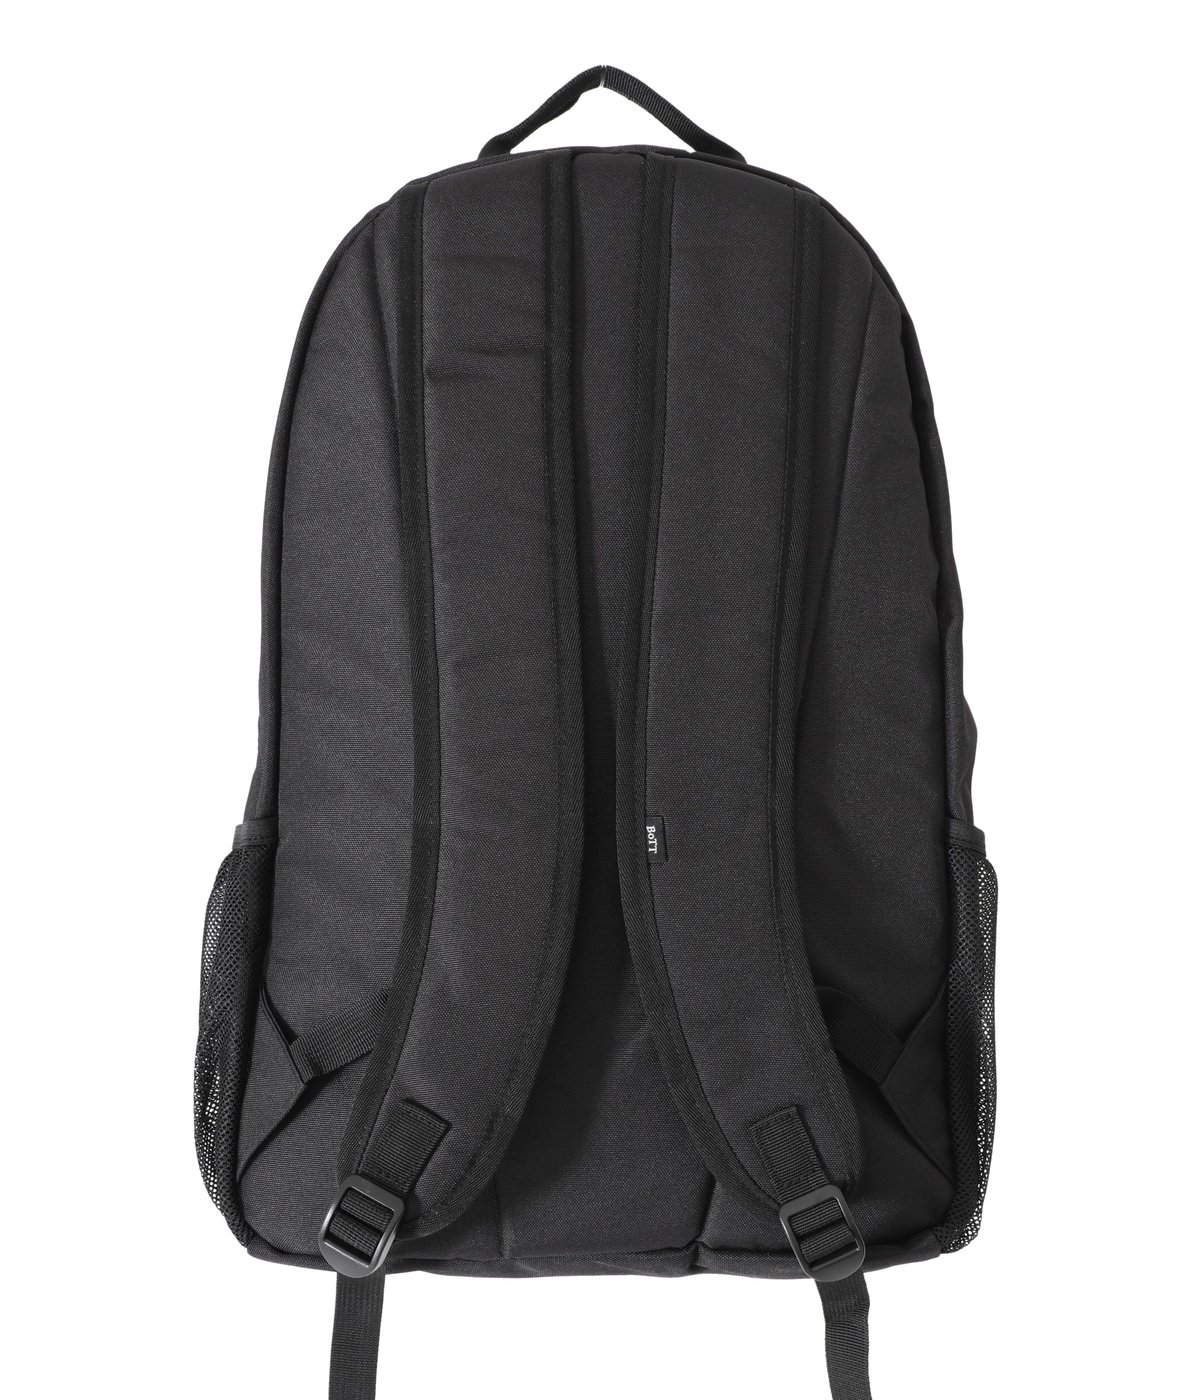 BoTT Sport Backpack Black